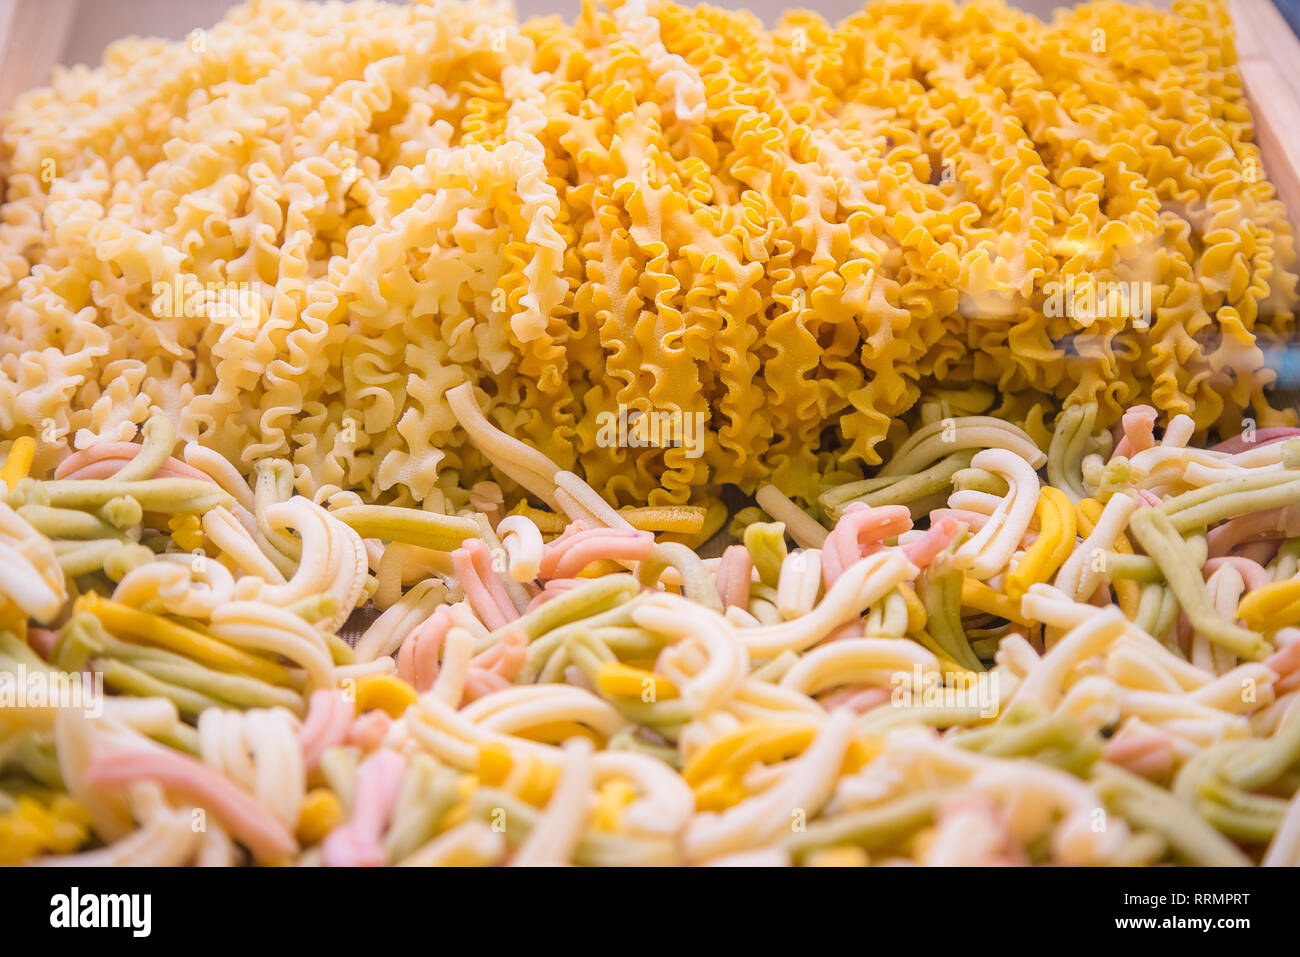 Frische hausgemachte raw italienische Pasta, close-up Textur von Tagliatelle pasta Mehl ribbon Nudel Stockfoto